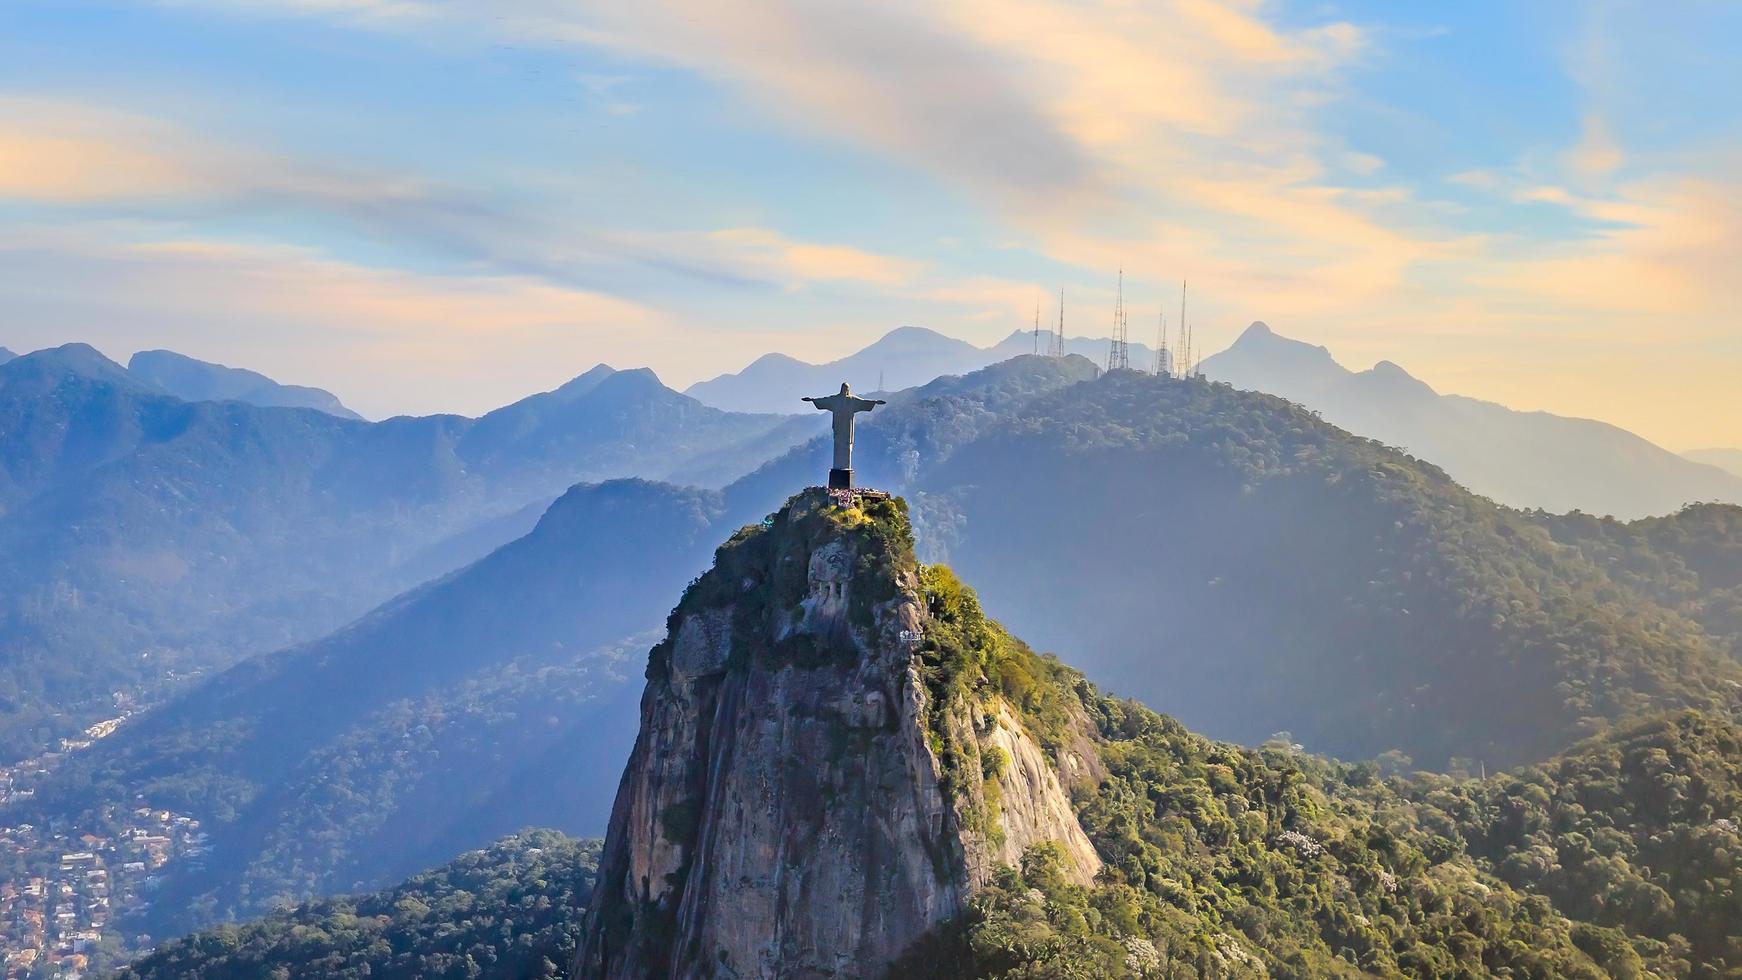 luchtfoto van Christus de Verlosser en de stad Rio de Janeiro foto